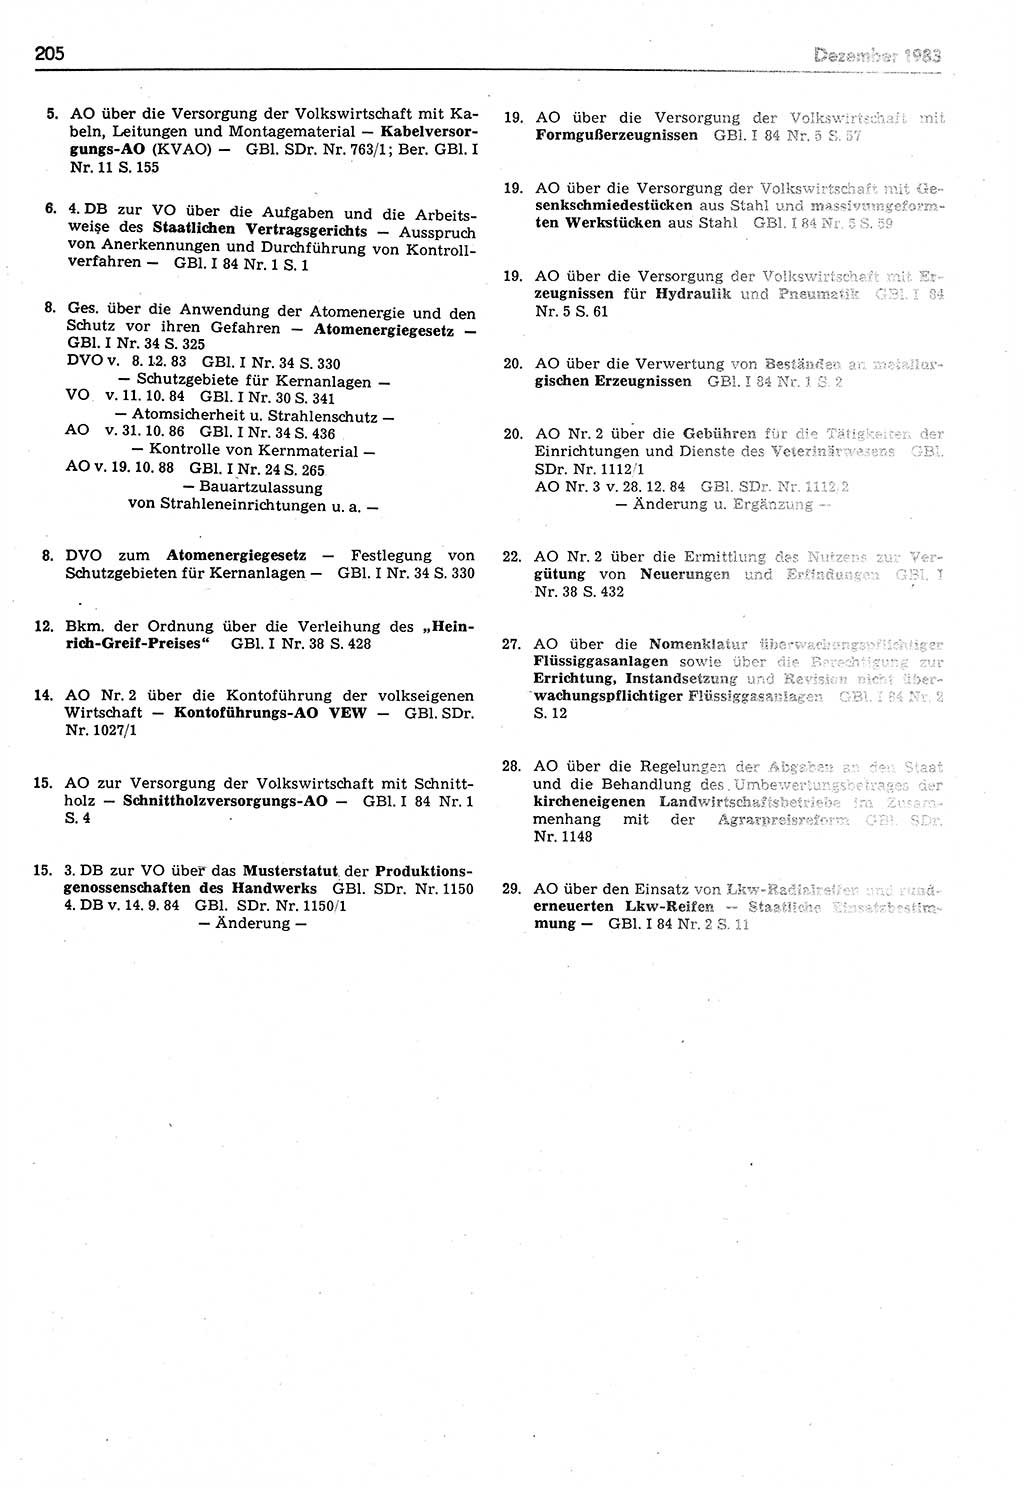 Das geltende Recht der Deutschen Demokratischen Republik (DDR) 1949-1988, Seite 205 (Gelt. R. DDR 1949-1988, S. 205)